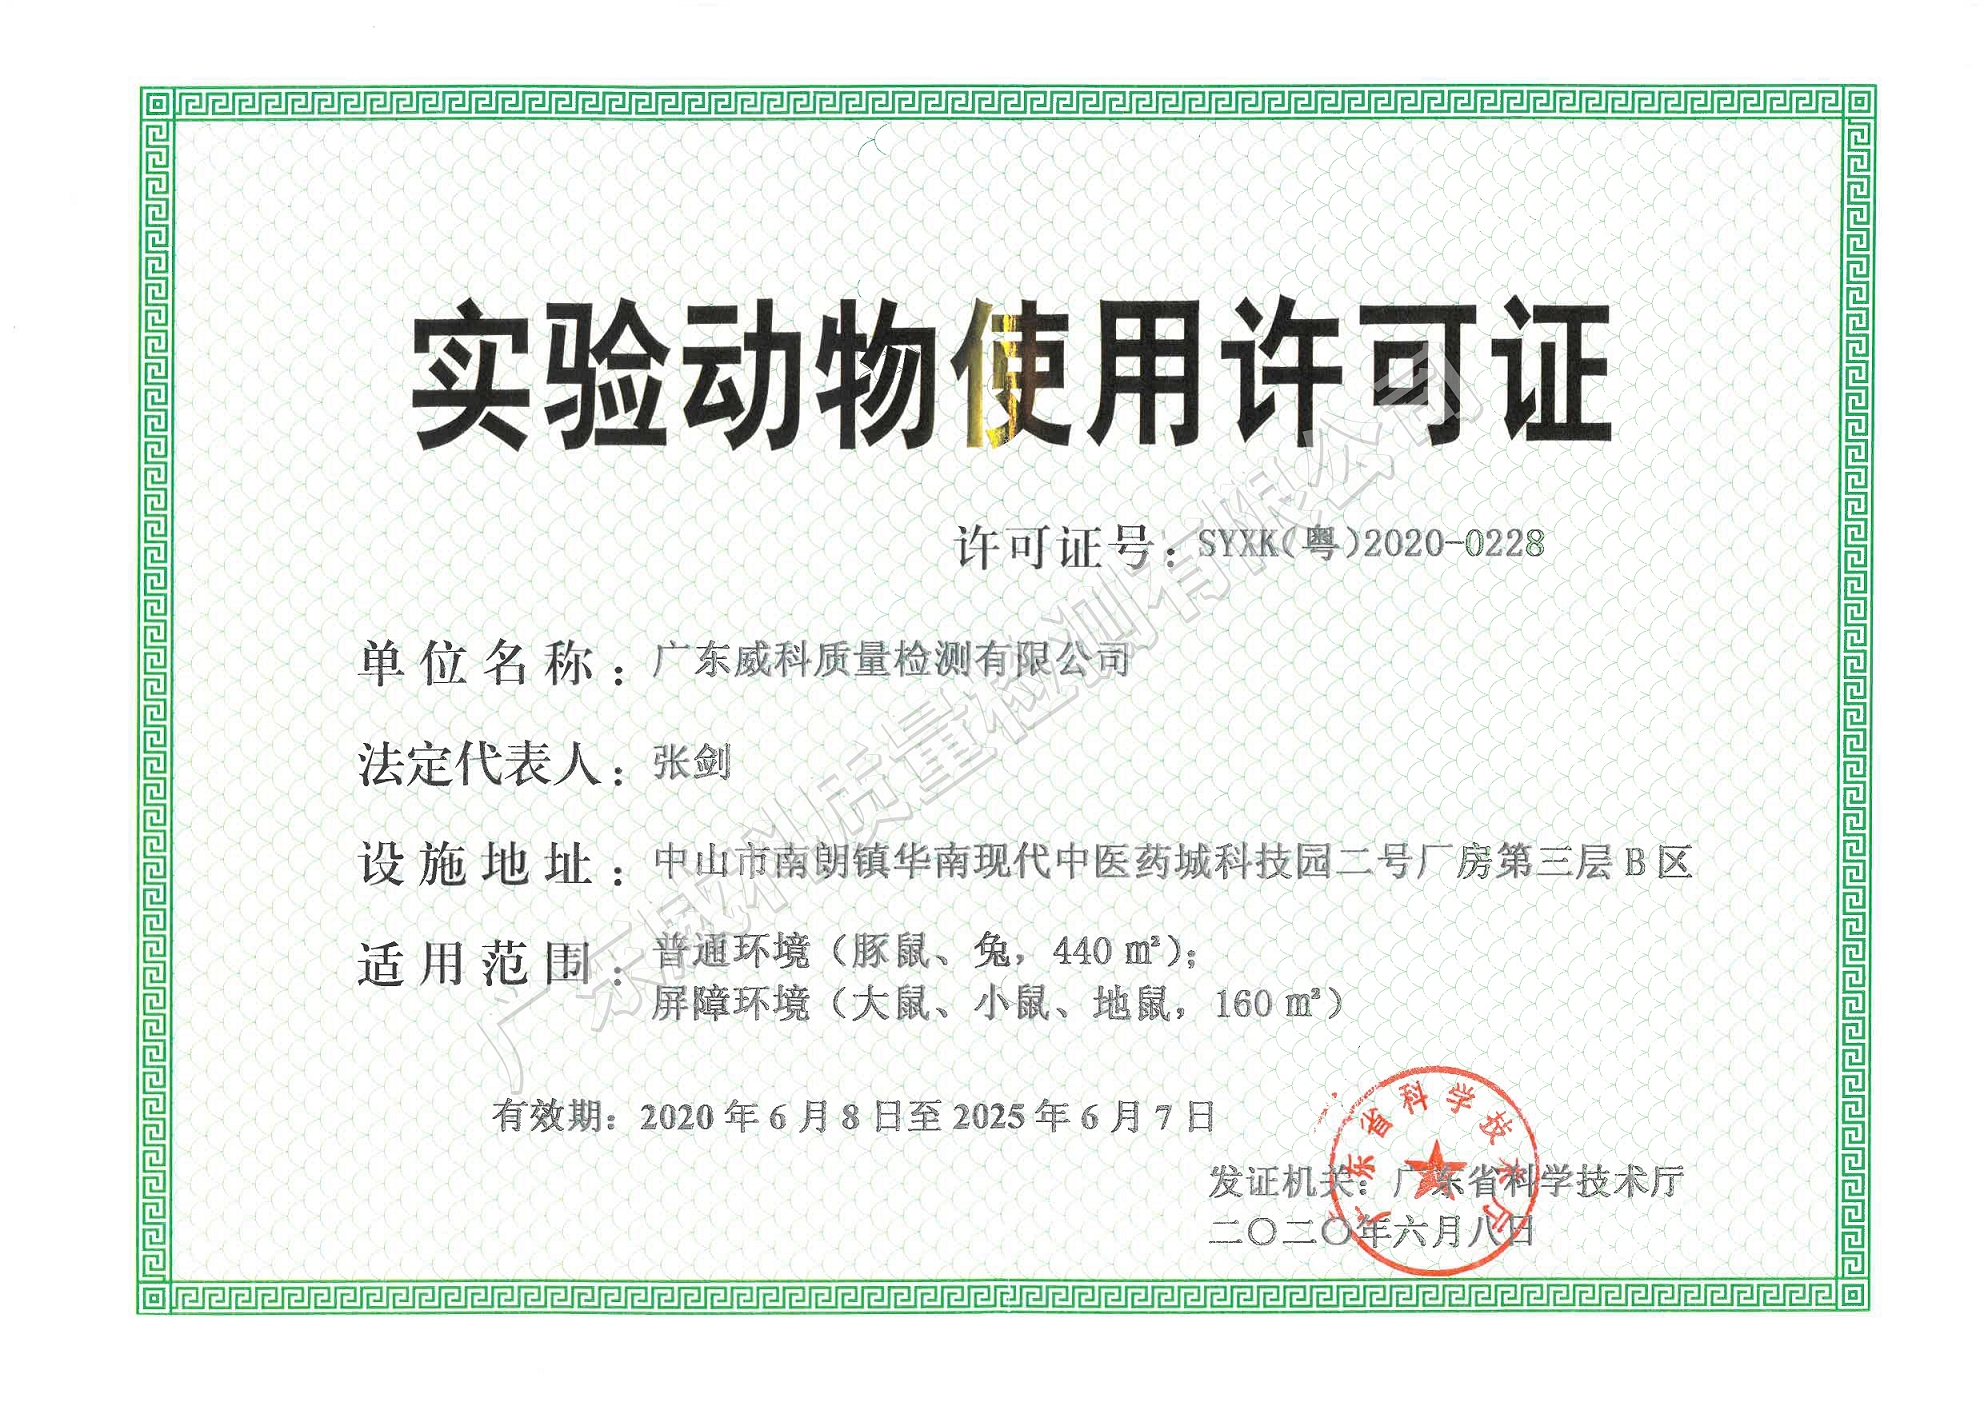 广东威科实验动物使用许可证申请顺利通过省科技厅现场评